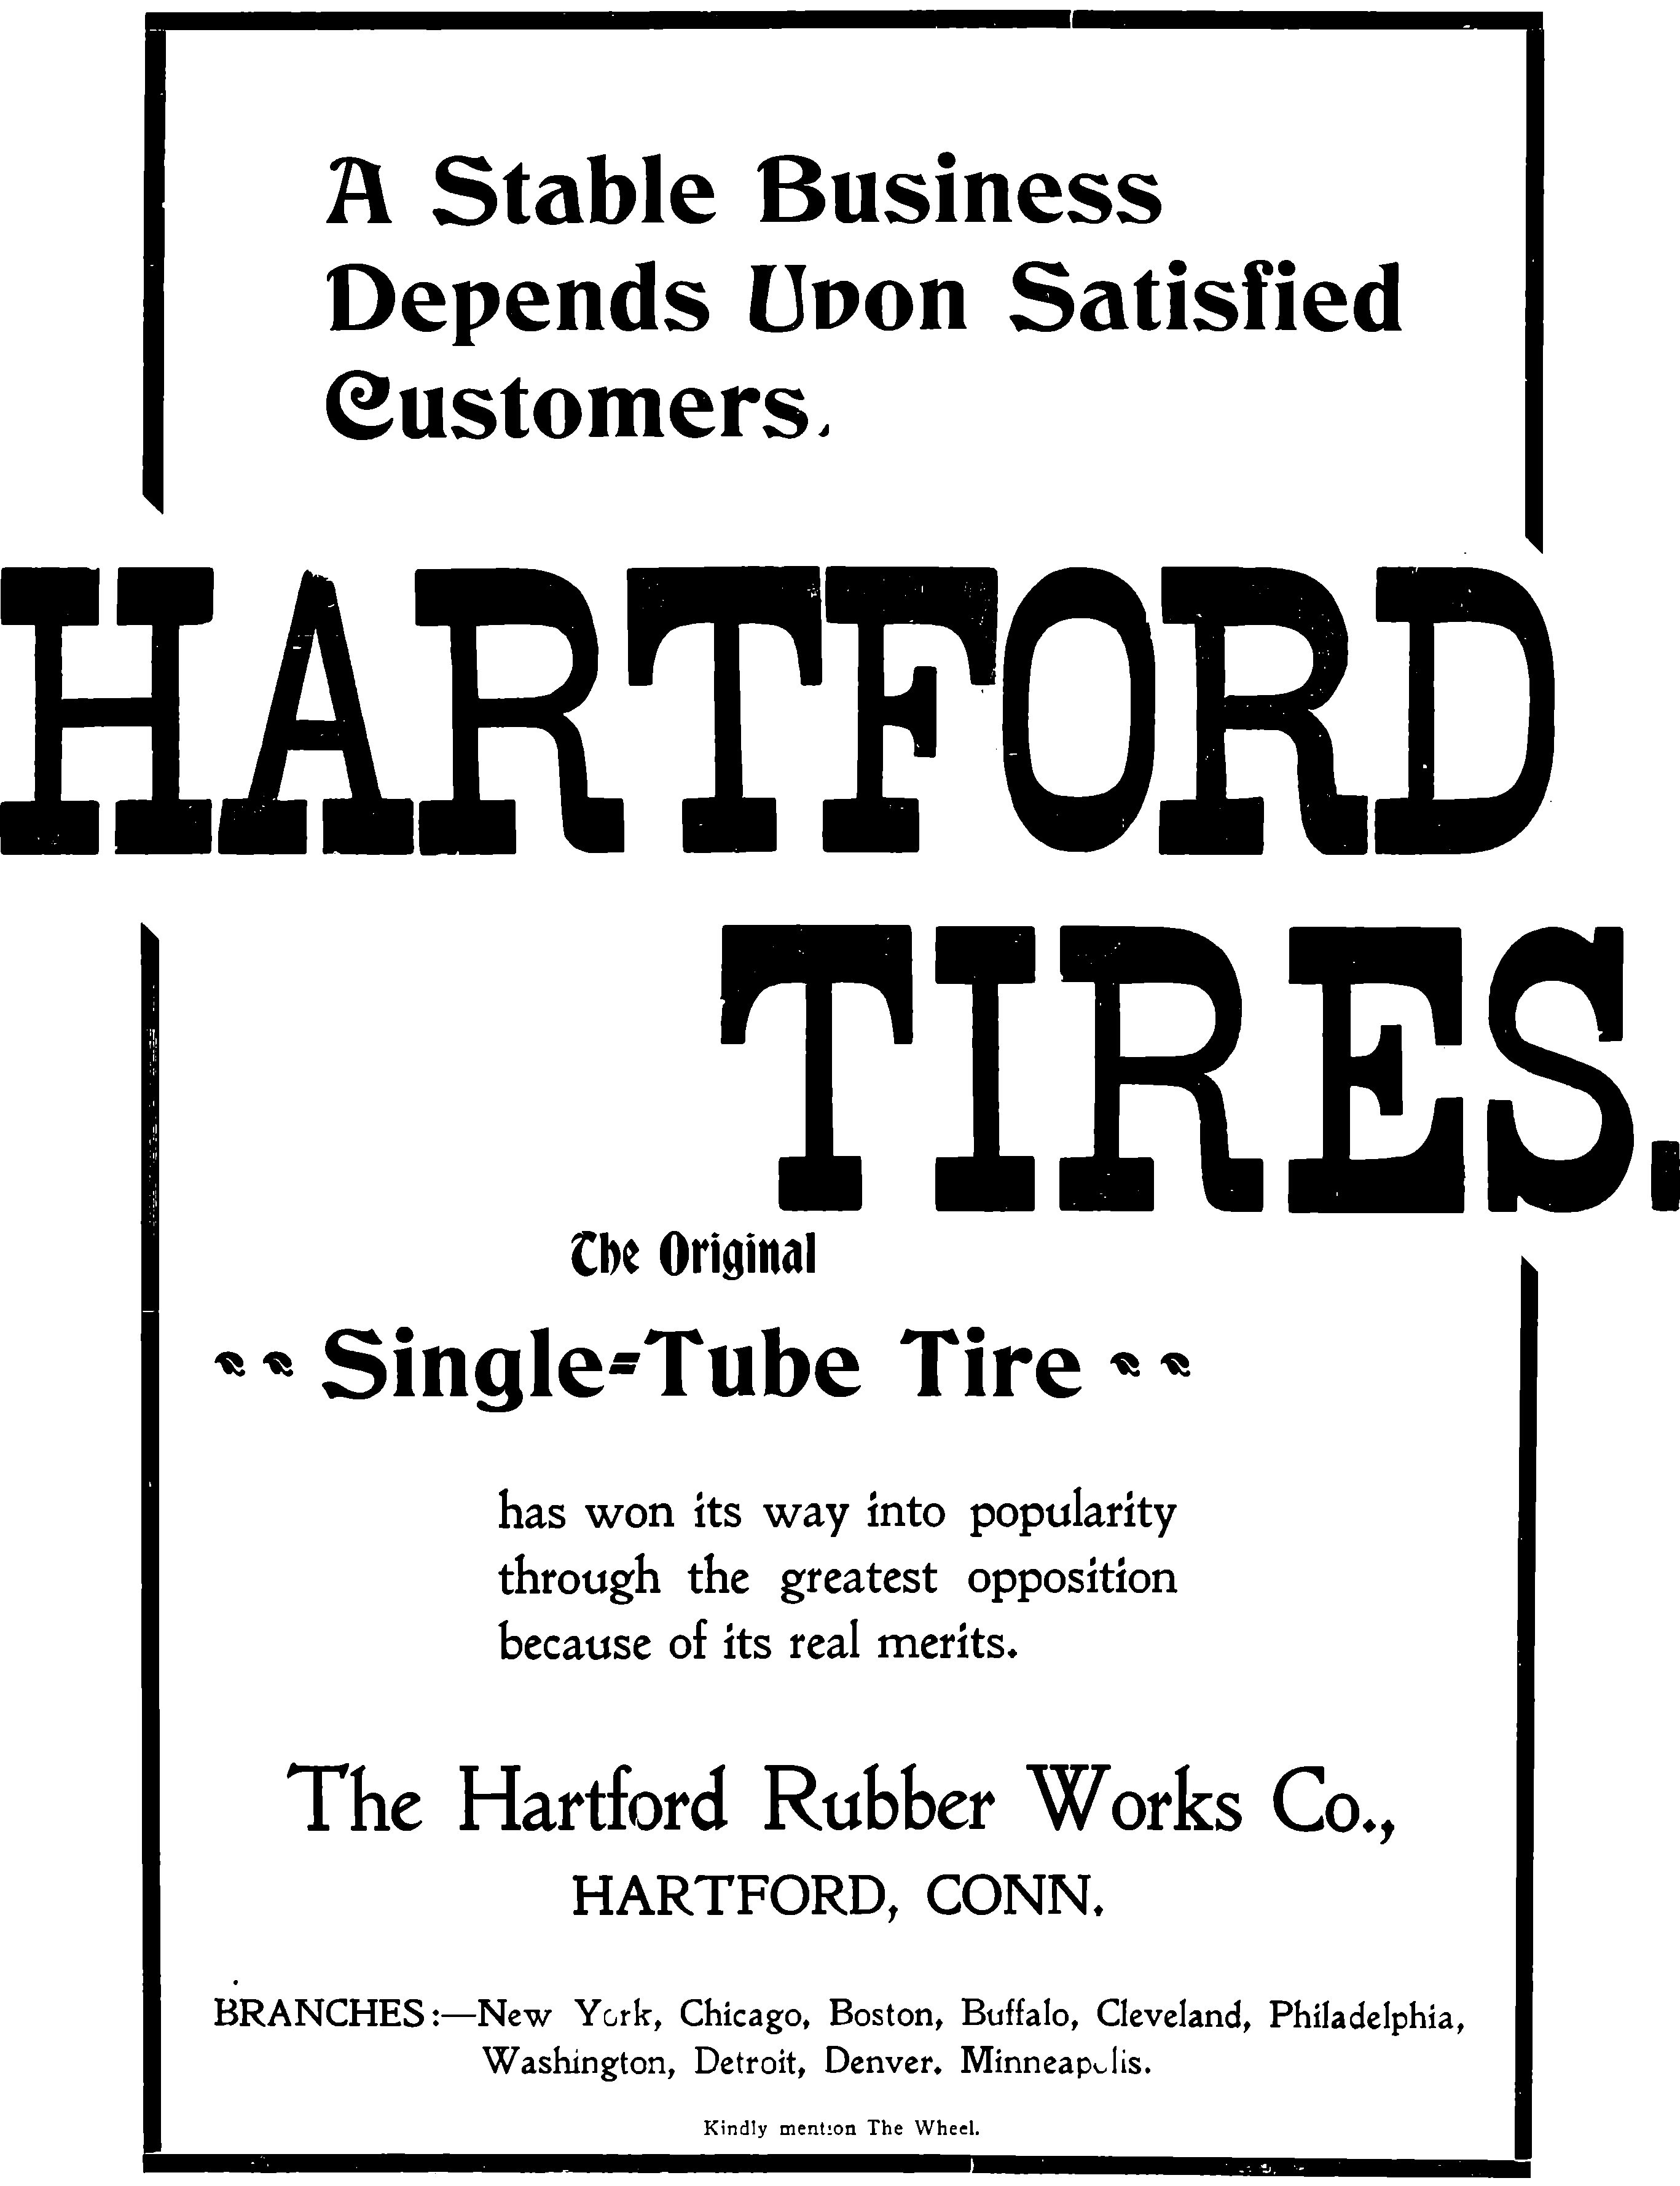 Hartford 1899 289.jpg